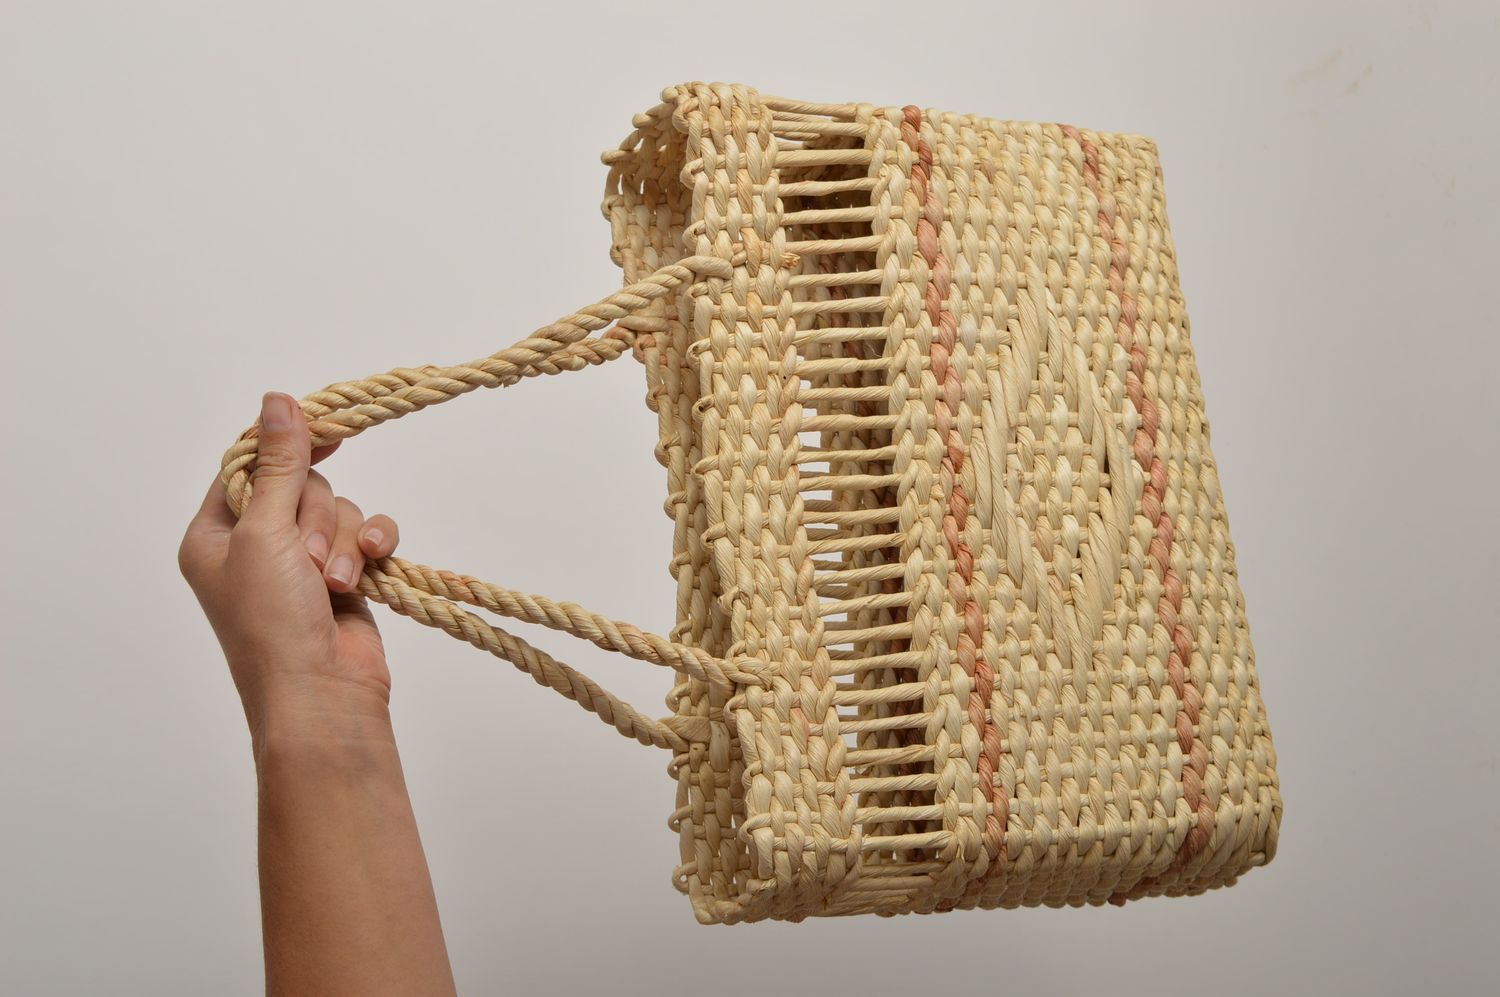 Handmade Woven Bags for Women